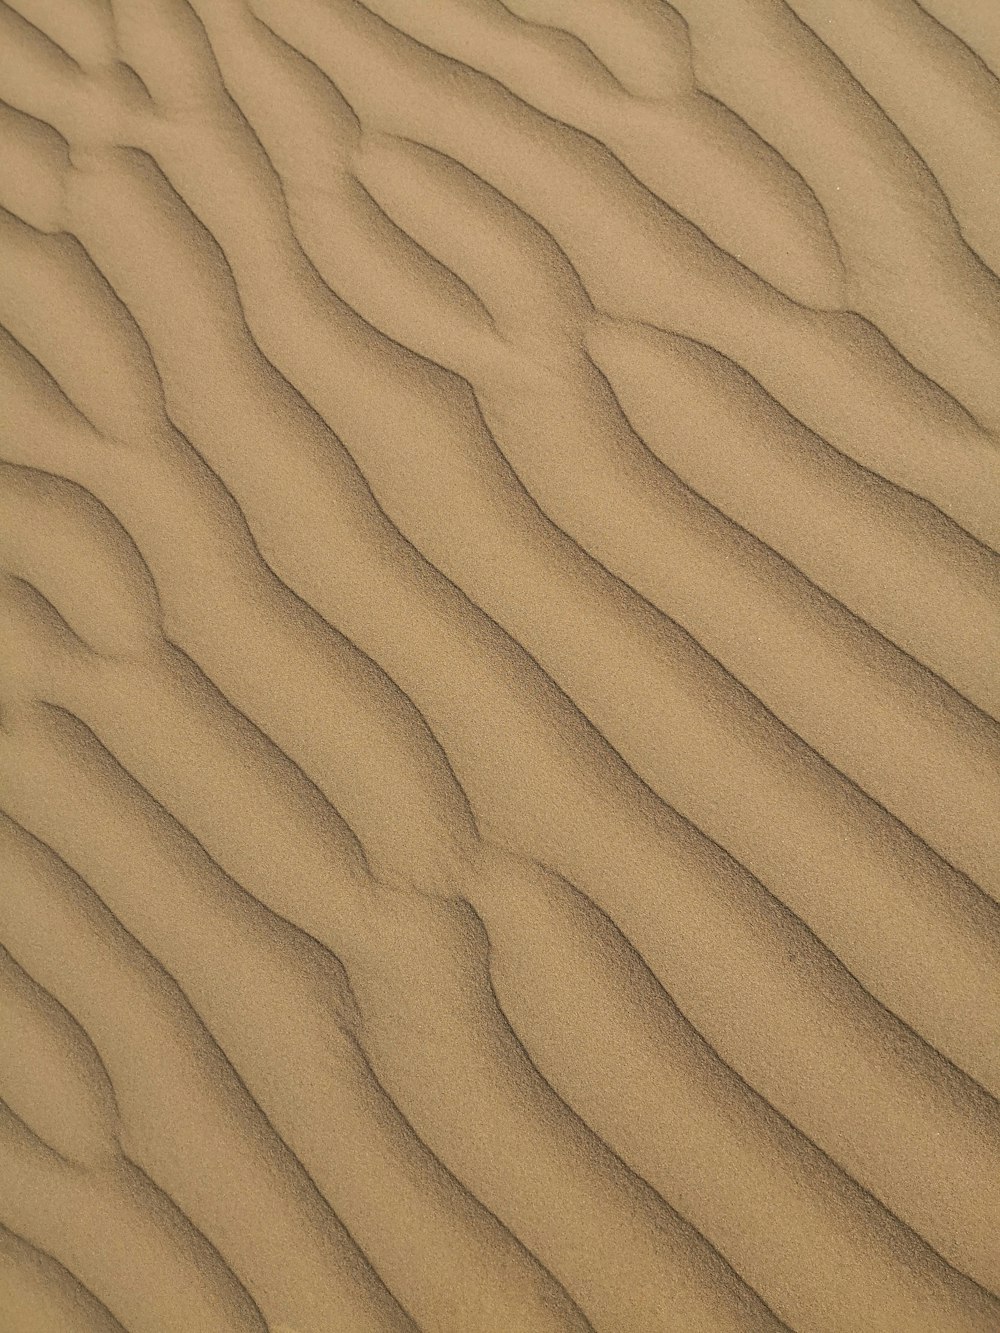 eine Sanddüne mit Wellenlinien im Sand